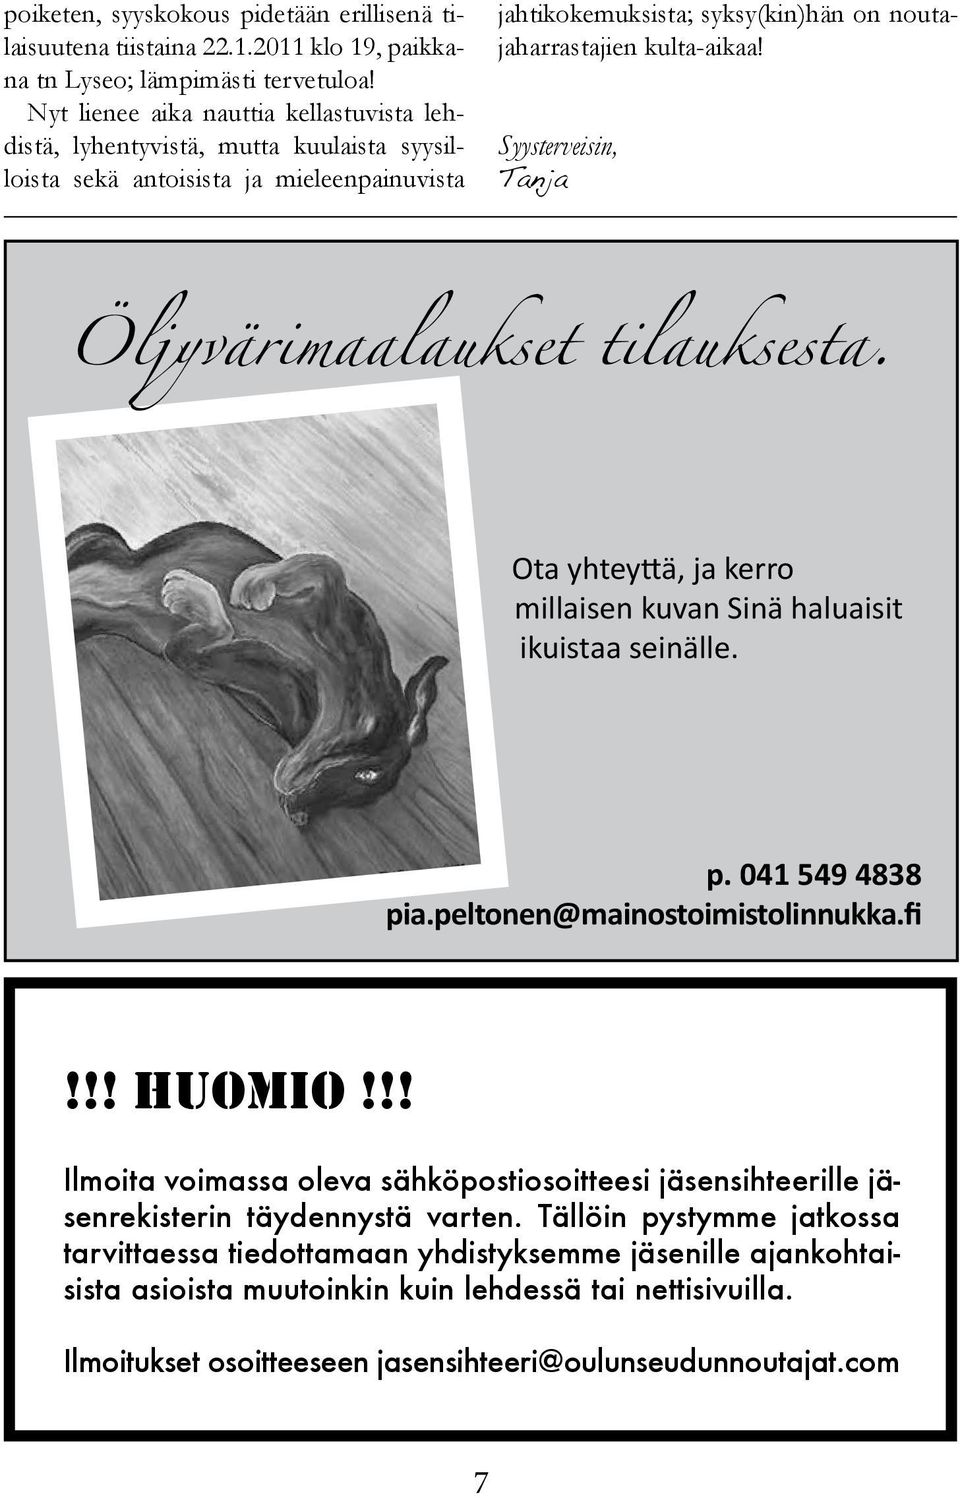 Syysterveisin, Tanja Öljyvärimaalaukset tilauksesta. Ota yhteyttä, ja kerro millaisen kuvan Sinä haluaisit ikuistaa seinälle. p. 041 549 4838 pia.peltonen@mainostoimistolinnukka.fi!!! HUOMIO!